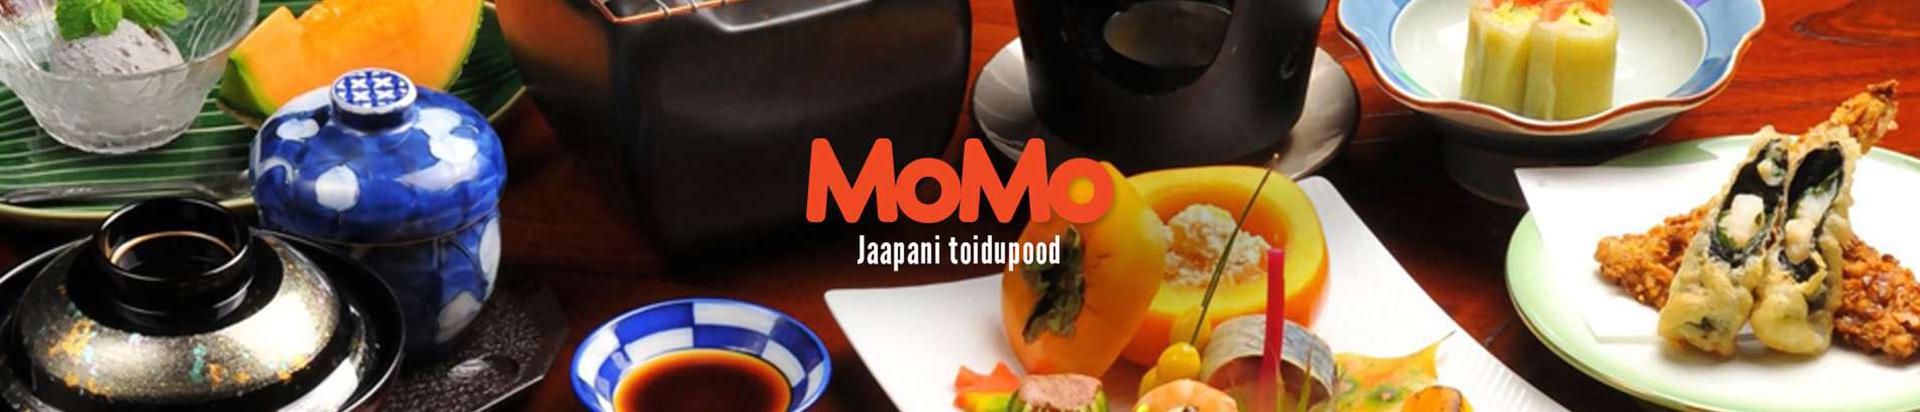 Esimene tõeline Jaapani restoran Eestis